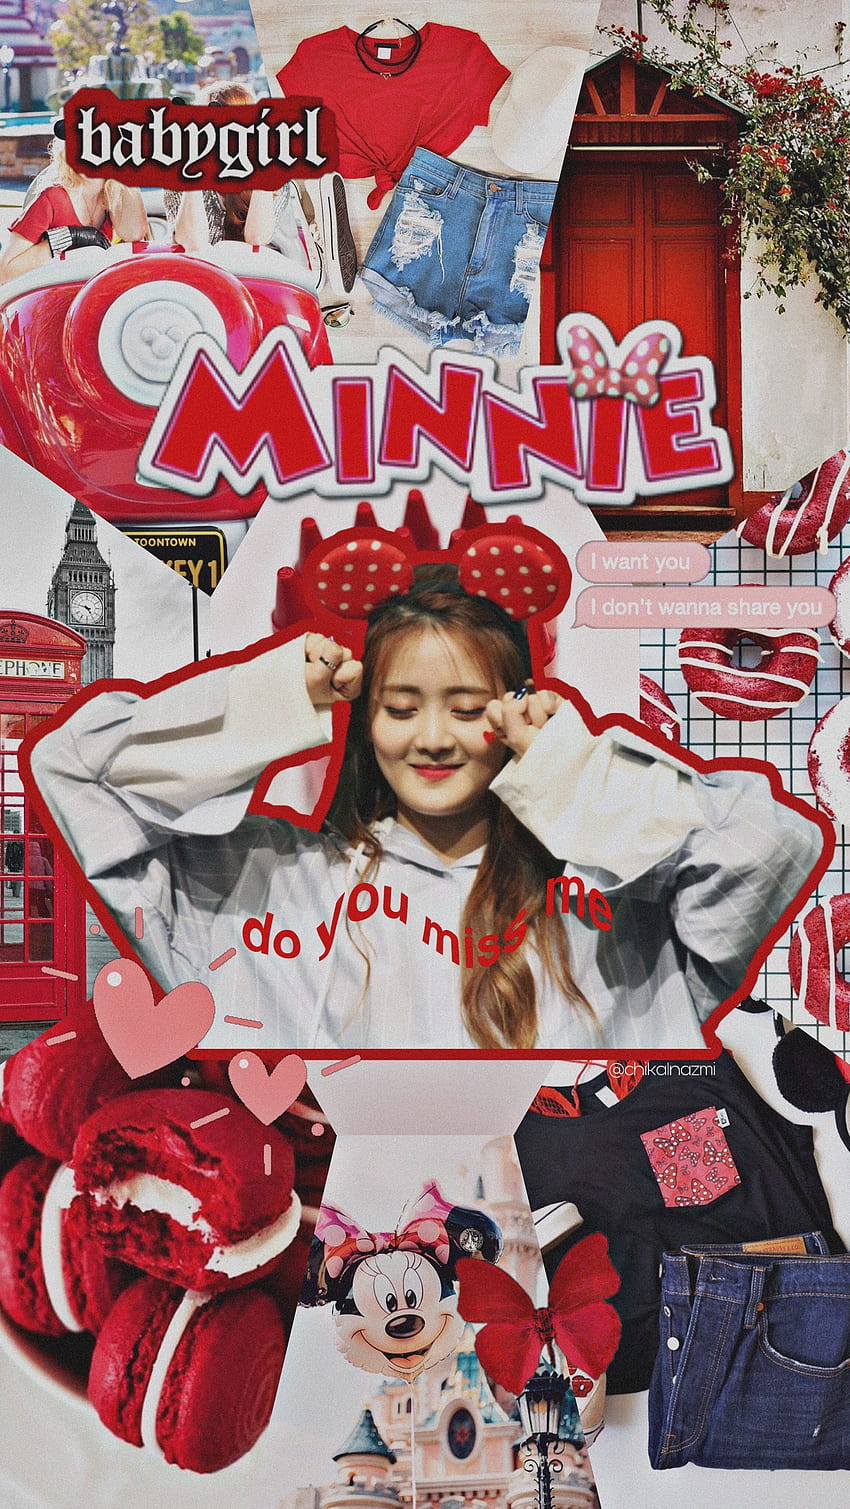 MINNIE, Minnie G-idle HD phone wallpaper